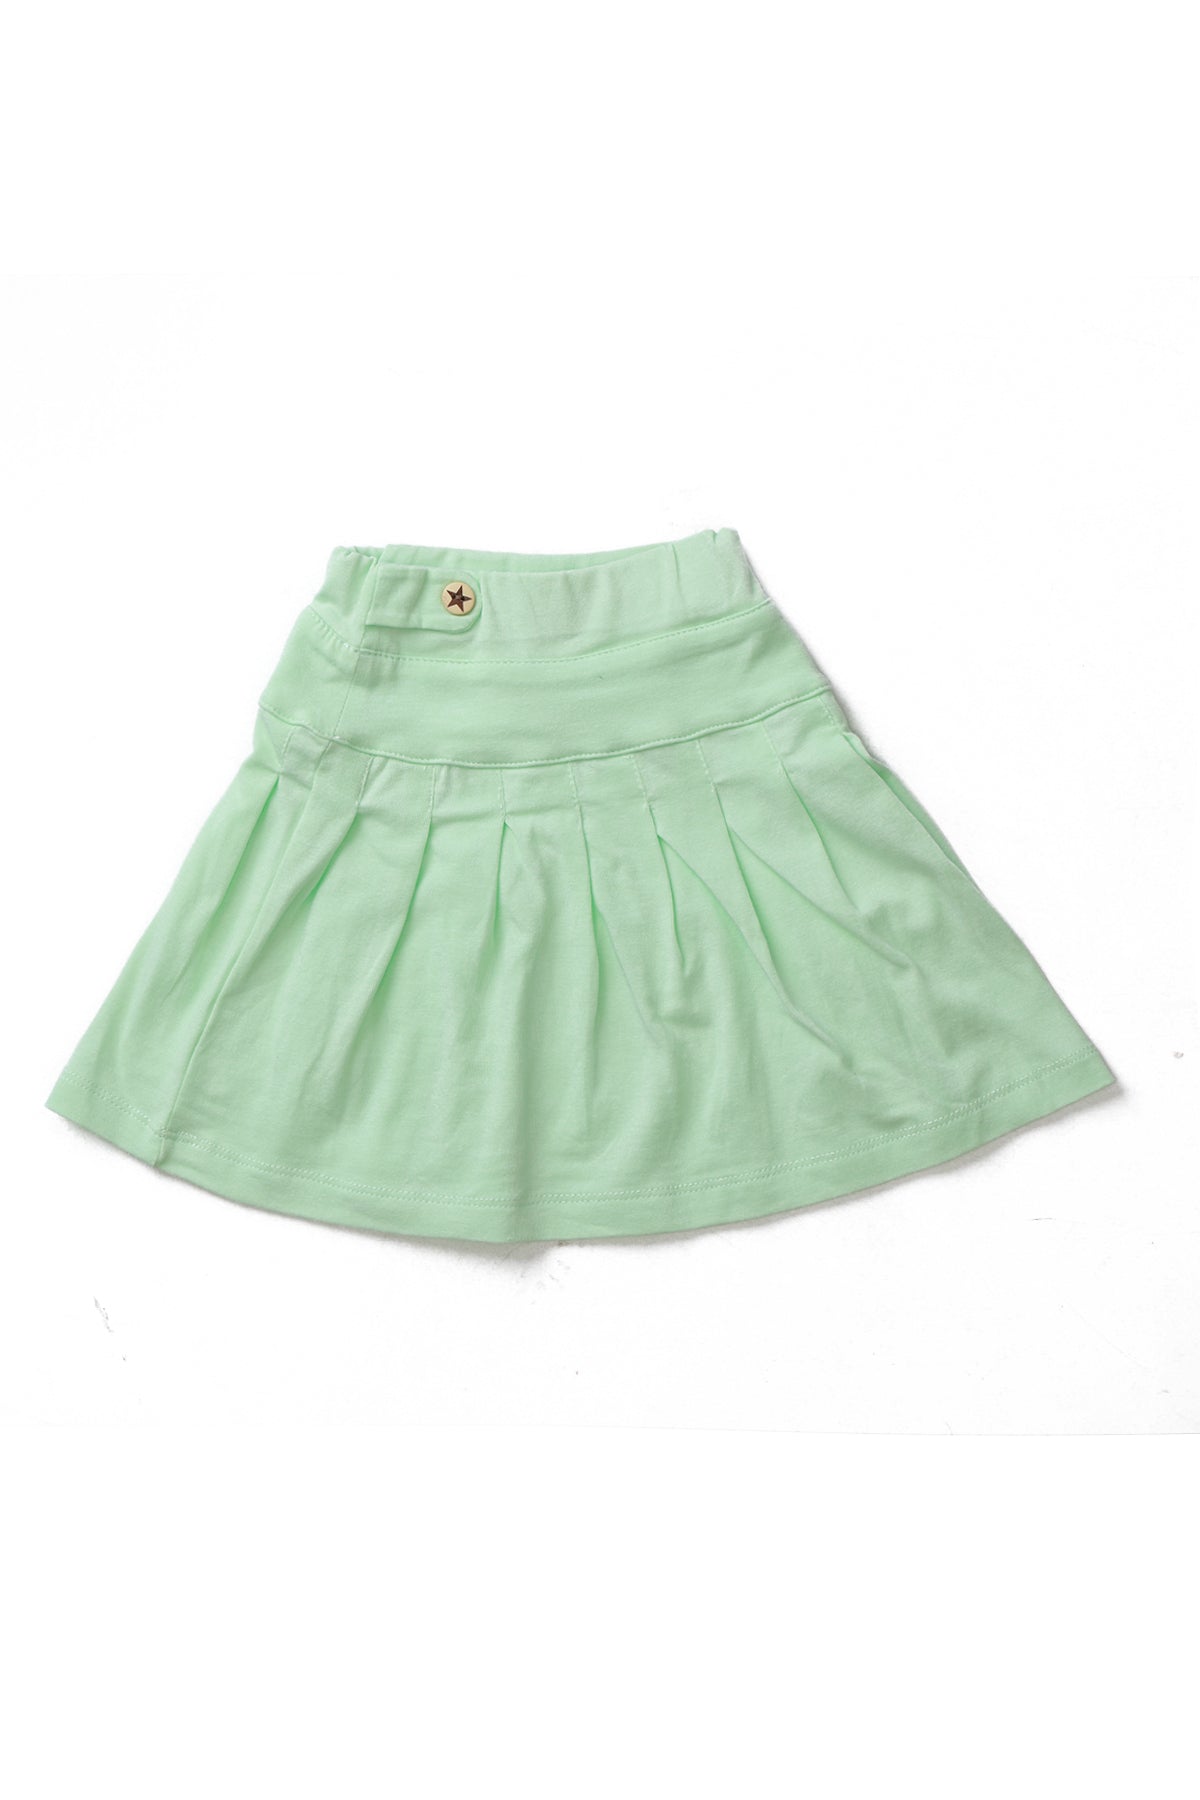 Ozone Baby Girls Casual Short Skirt